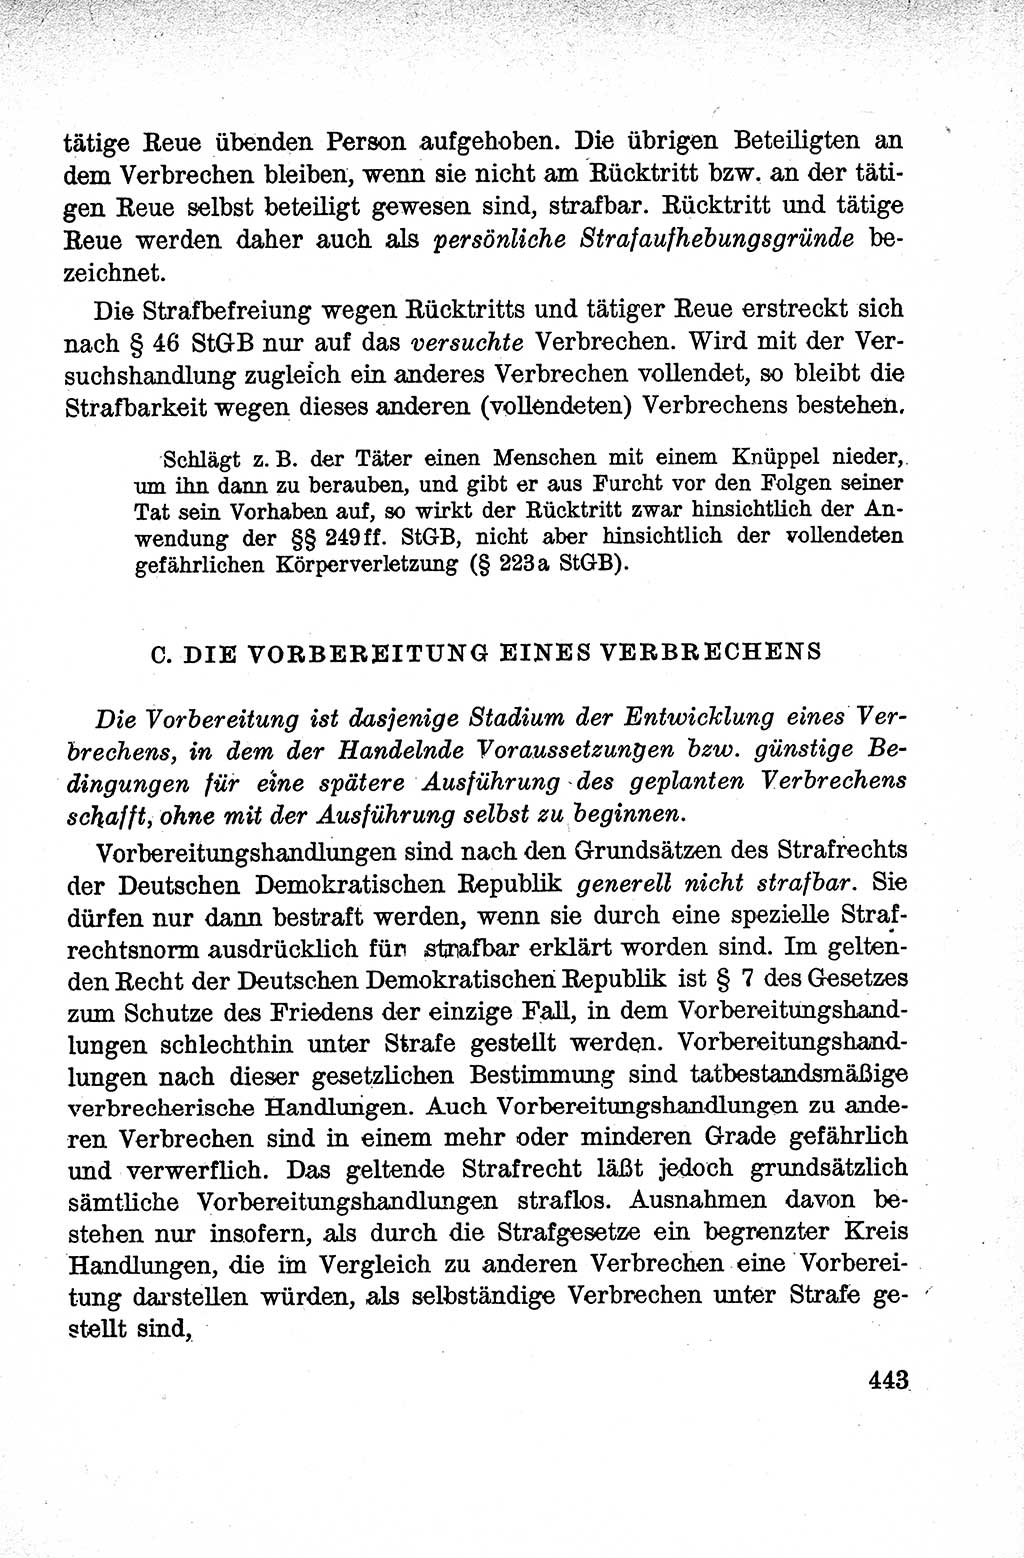 Lehrbuch des Strafrechts der Deutschen Demokratischen Republik (DDR), Allgemeiner Teil 1959, Seite 443 (Lb. Strafr. DDR AT 1959, S. 443)